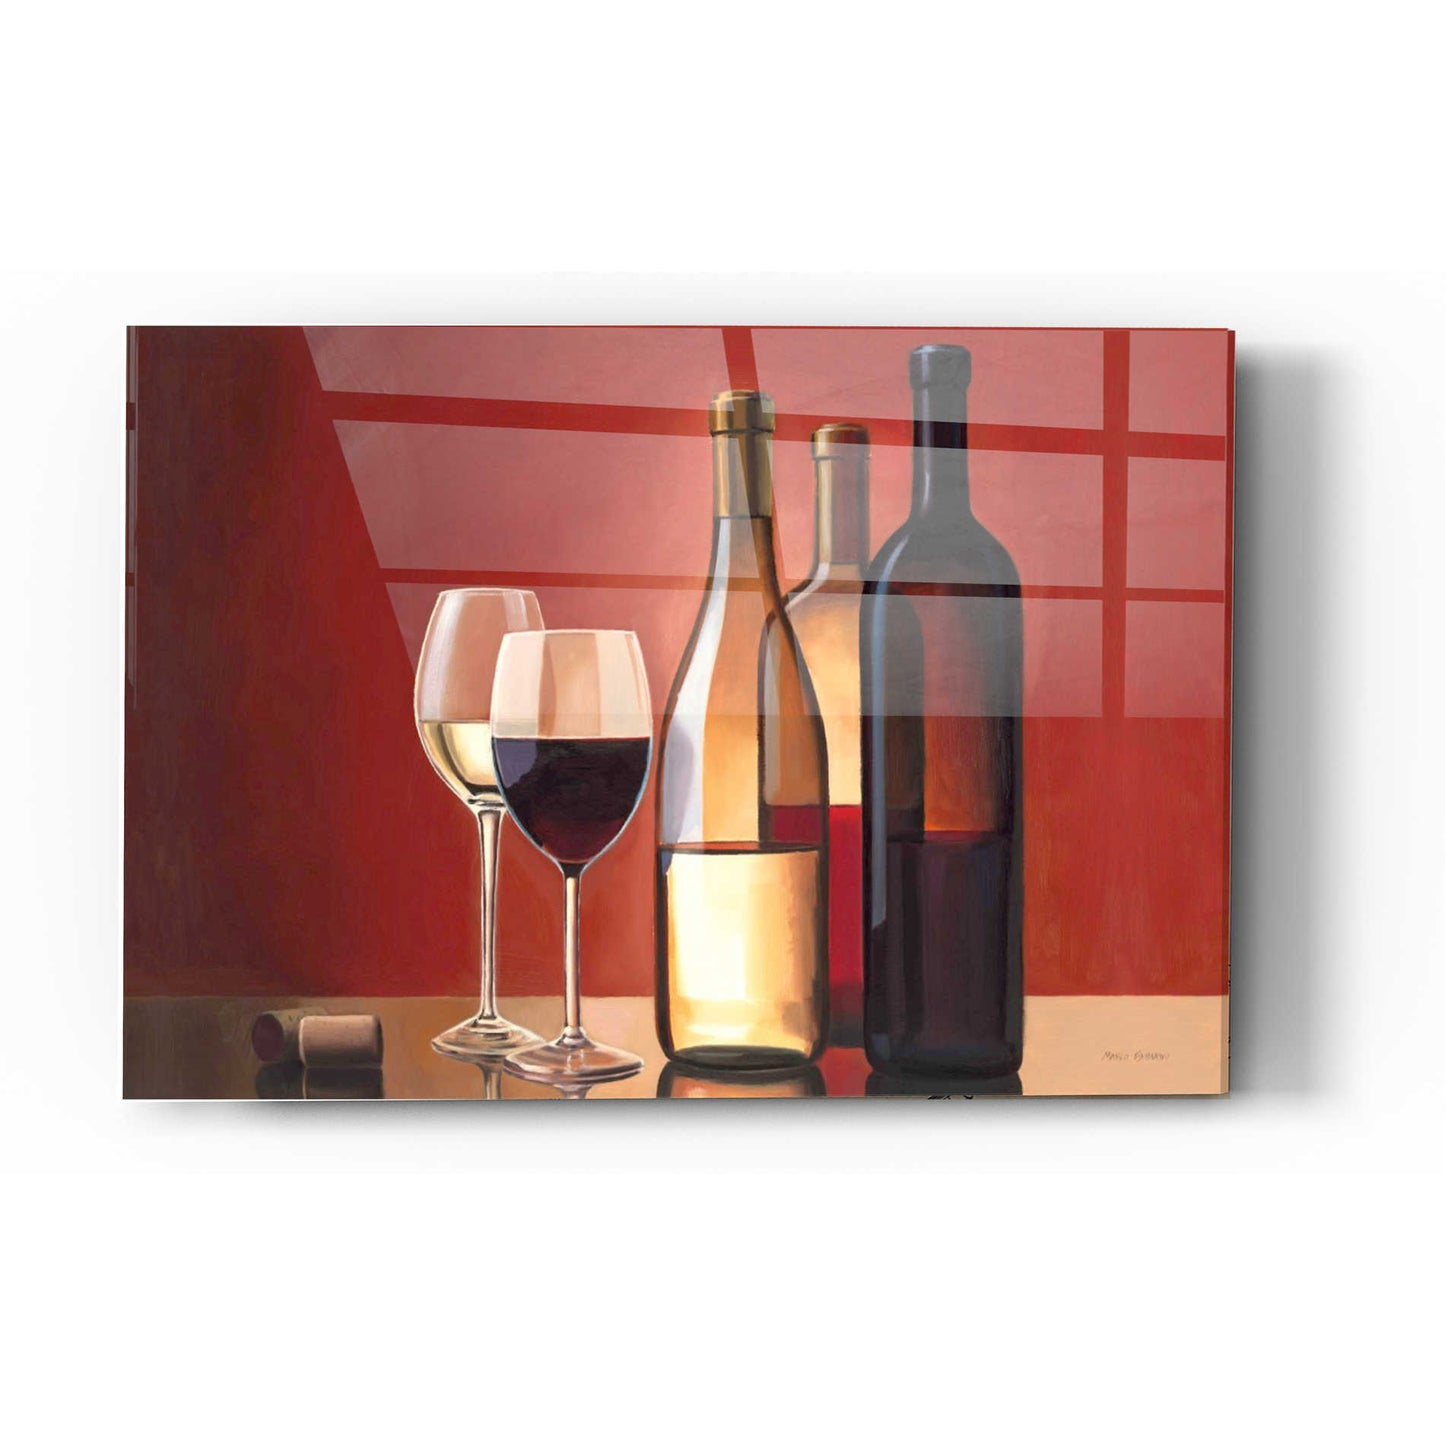 Epic Art 'Wine Trio' by Marco Fabiano, Acrylic Glass Wall Art,16x24